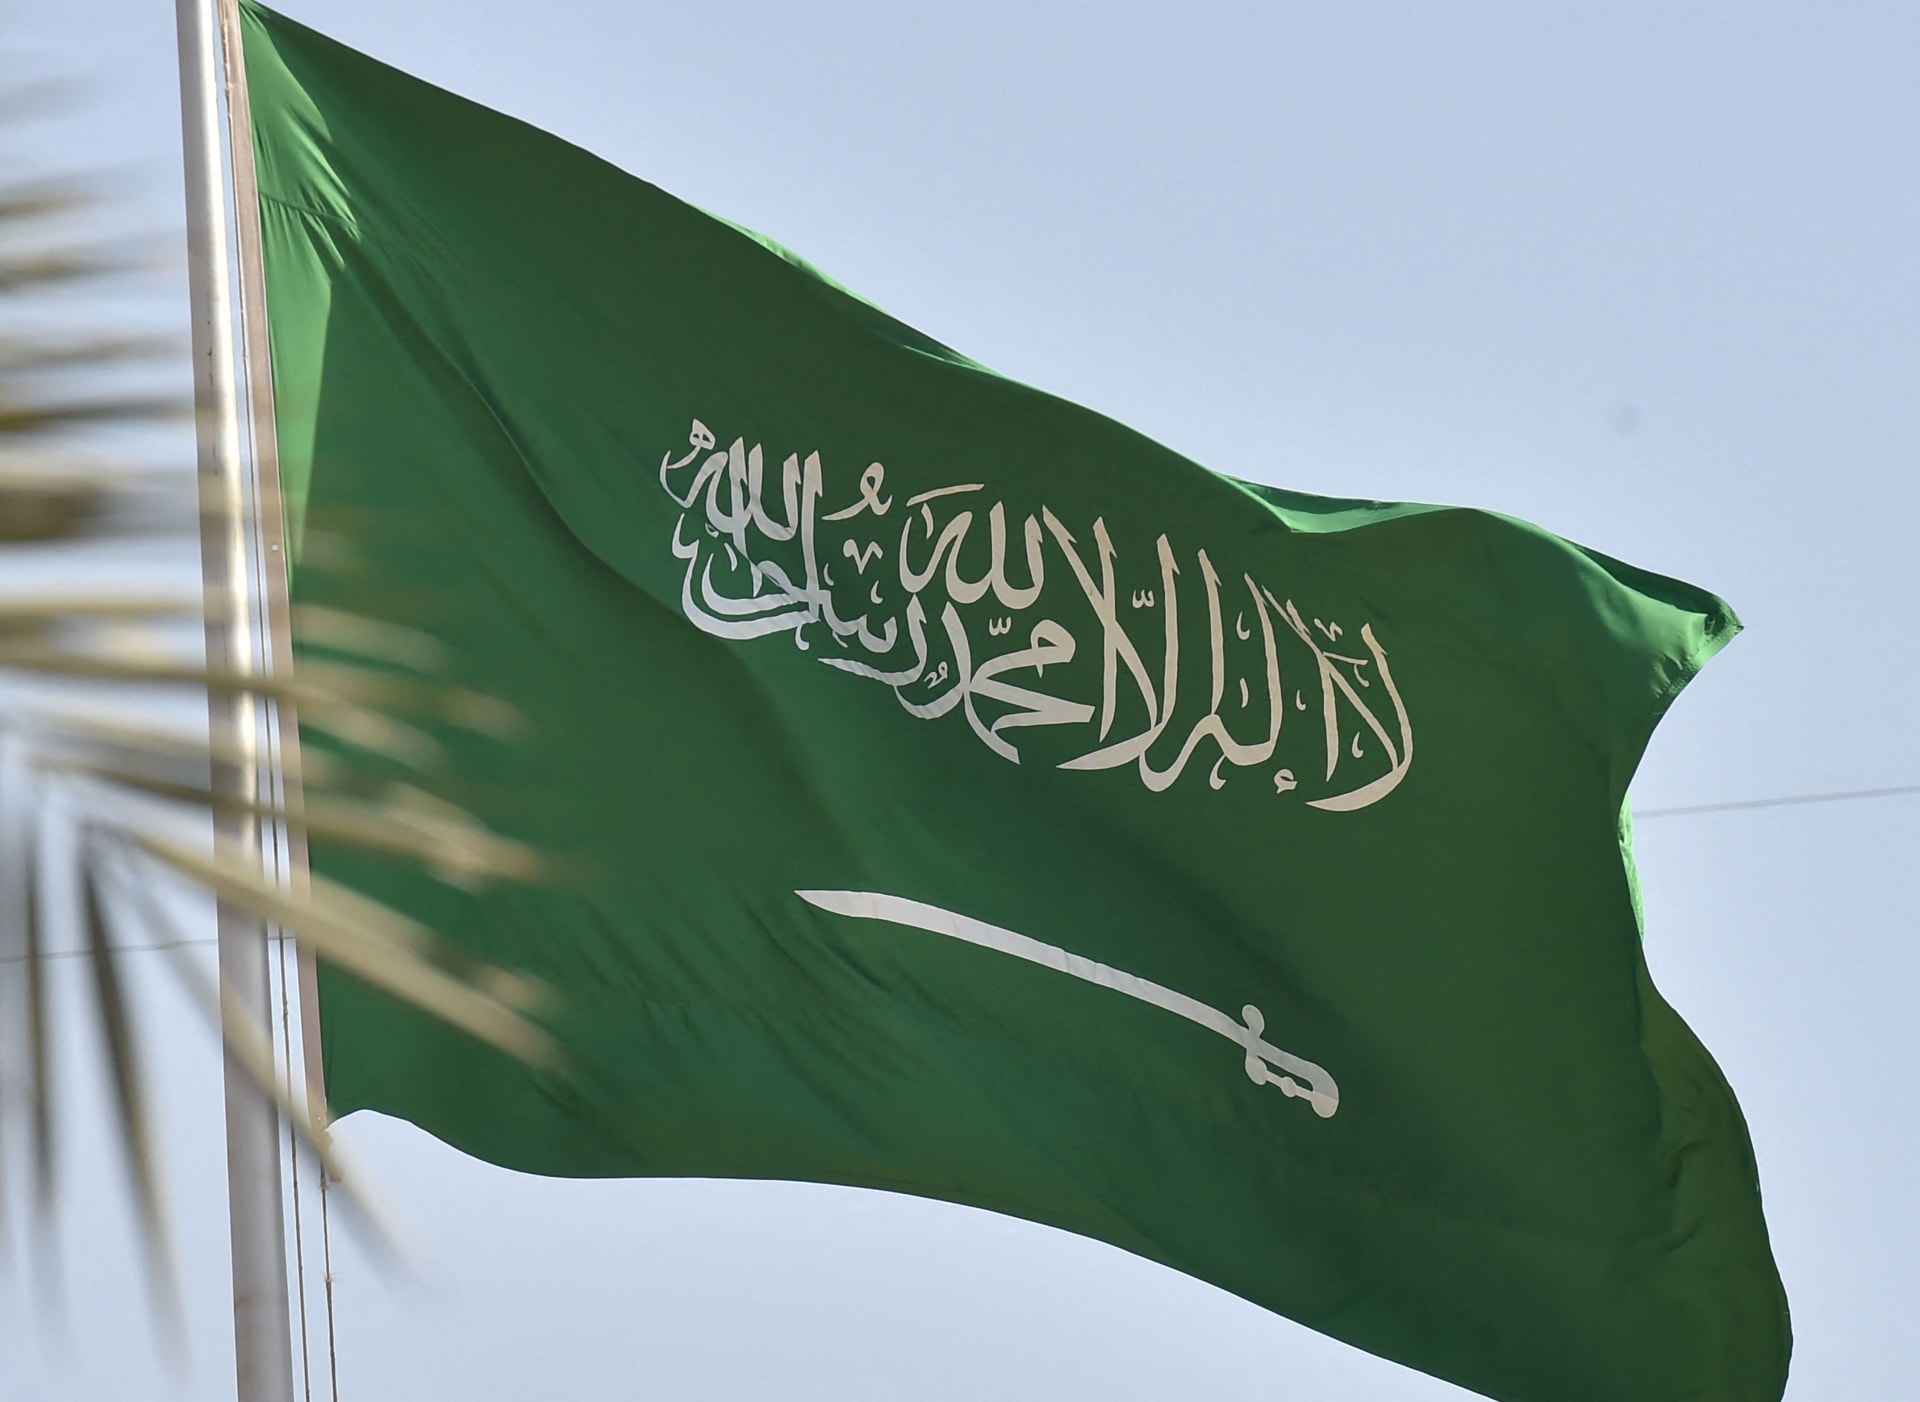 السعودية تعلن "تخريب جماعات مسلحة" مبنى سفارتها في السودان